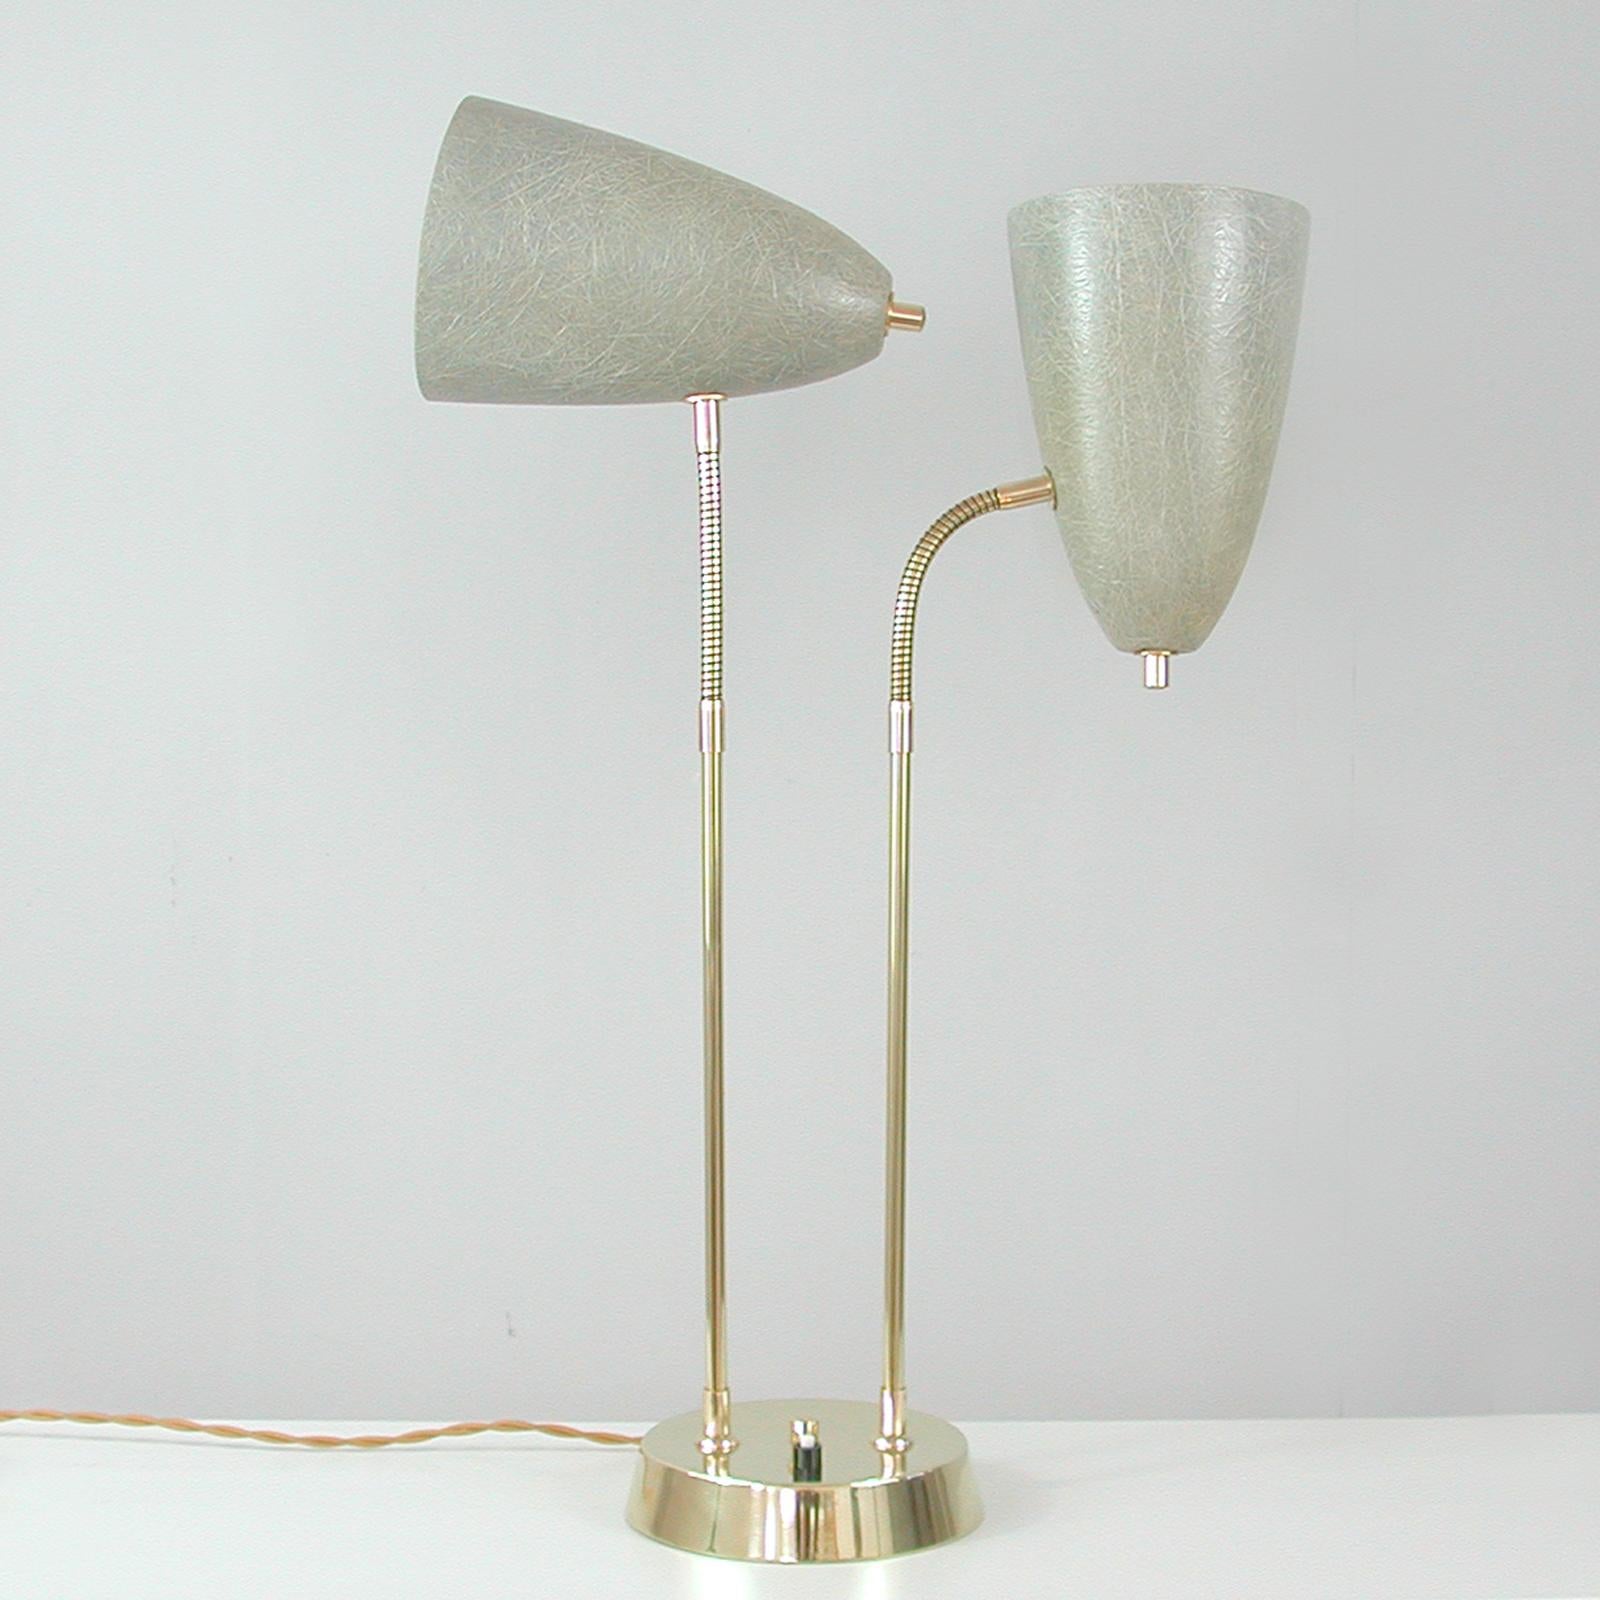 Diese ungewöhnliche Schreibtischlampe wurde in den 1950er Jahren in Schweden entworfen und hergestellt. Sie verfügt über einen Lampenfuß aus Messing, Lampenstangen aus Messing und zwei verstellbare, kegelförmige Lampenschirme aus grauem